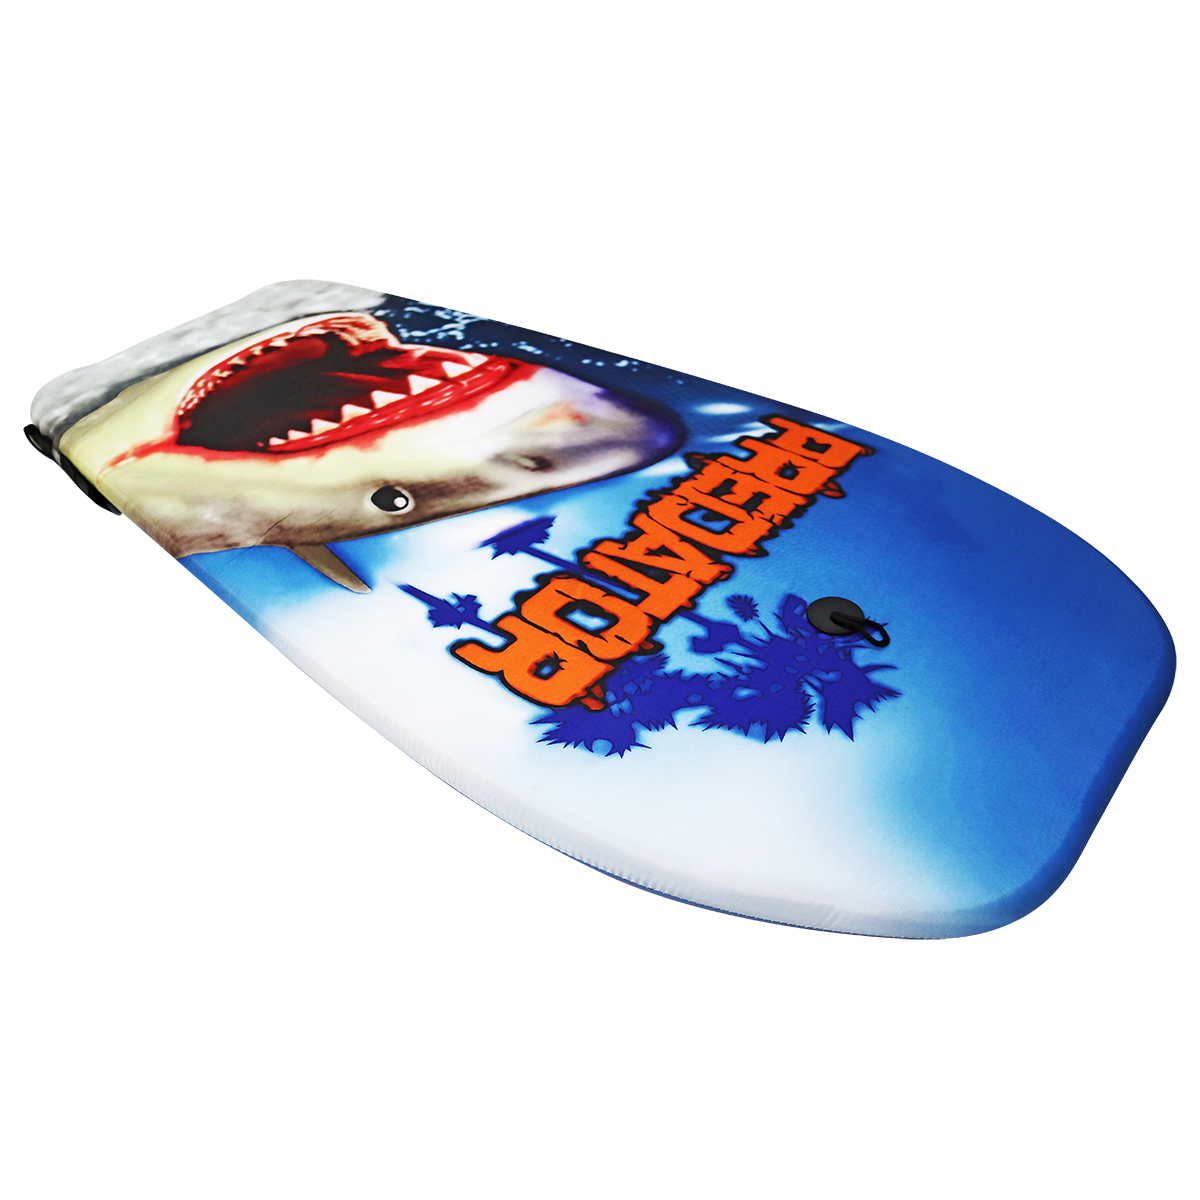 SURFBRETT BODYBOARD 92x43cm SCHWIMMBRETT WELLENREITER Wellenreiten Surfen 